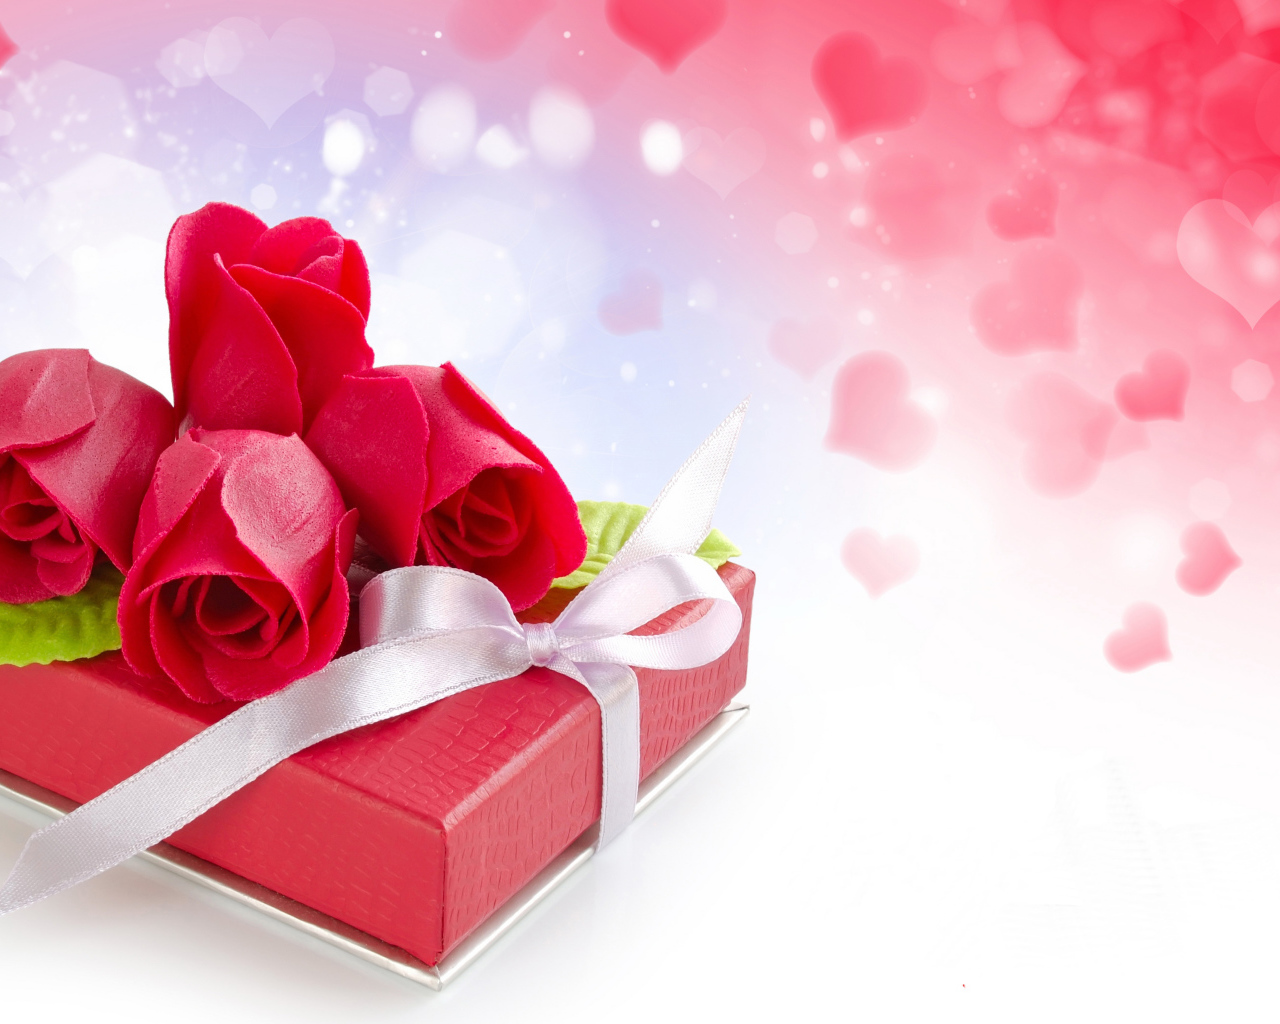 Подарок с красными розами, шаблон для открытки на День Святого Валентина 